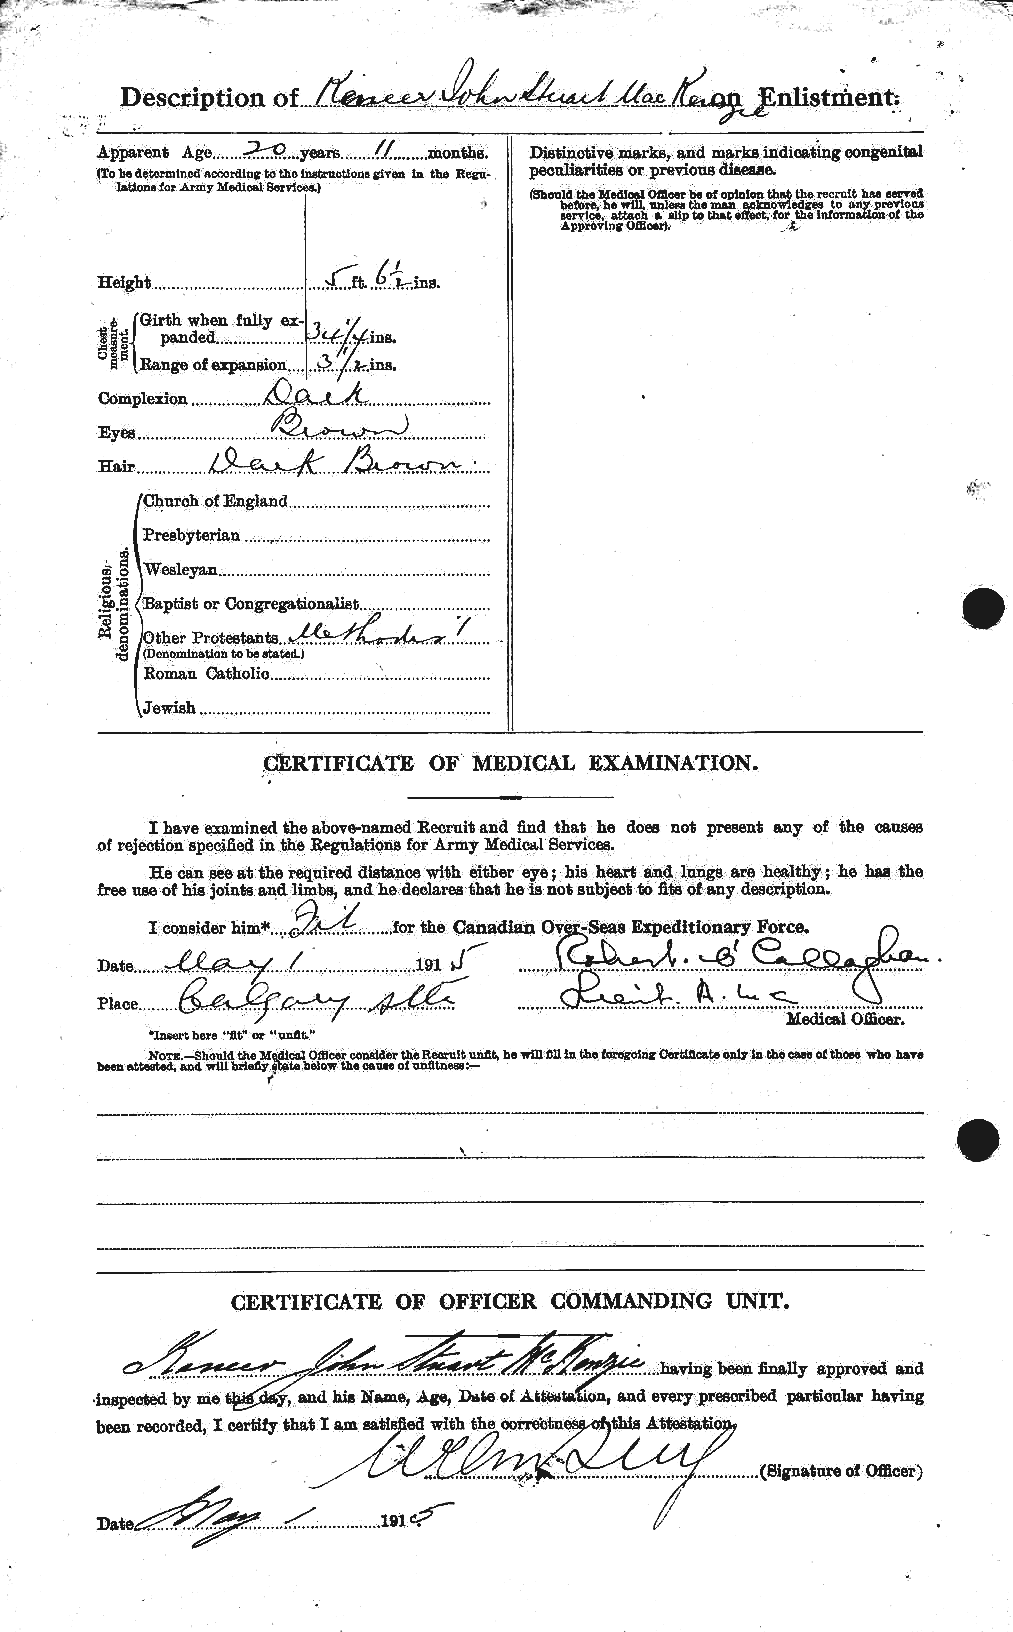 Dossiers du Personnel de la Première Guerre mondiale - CEC 529457b